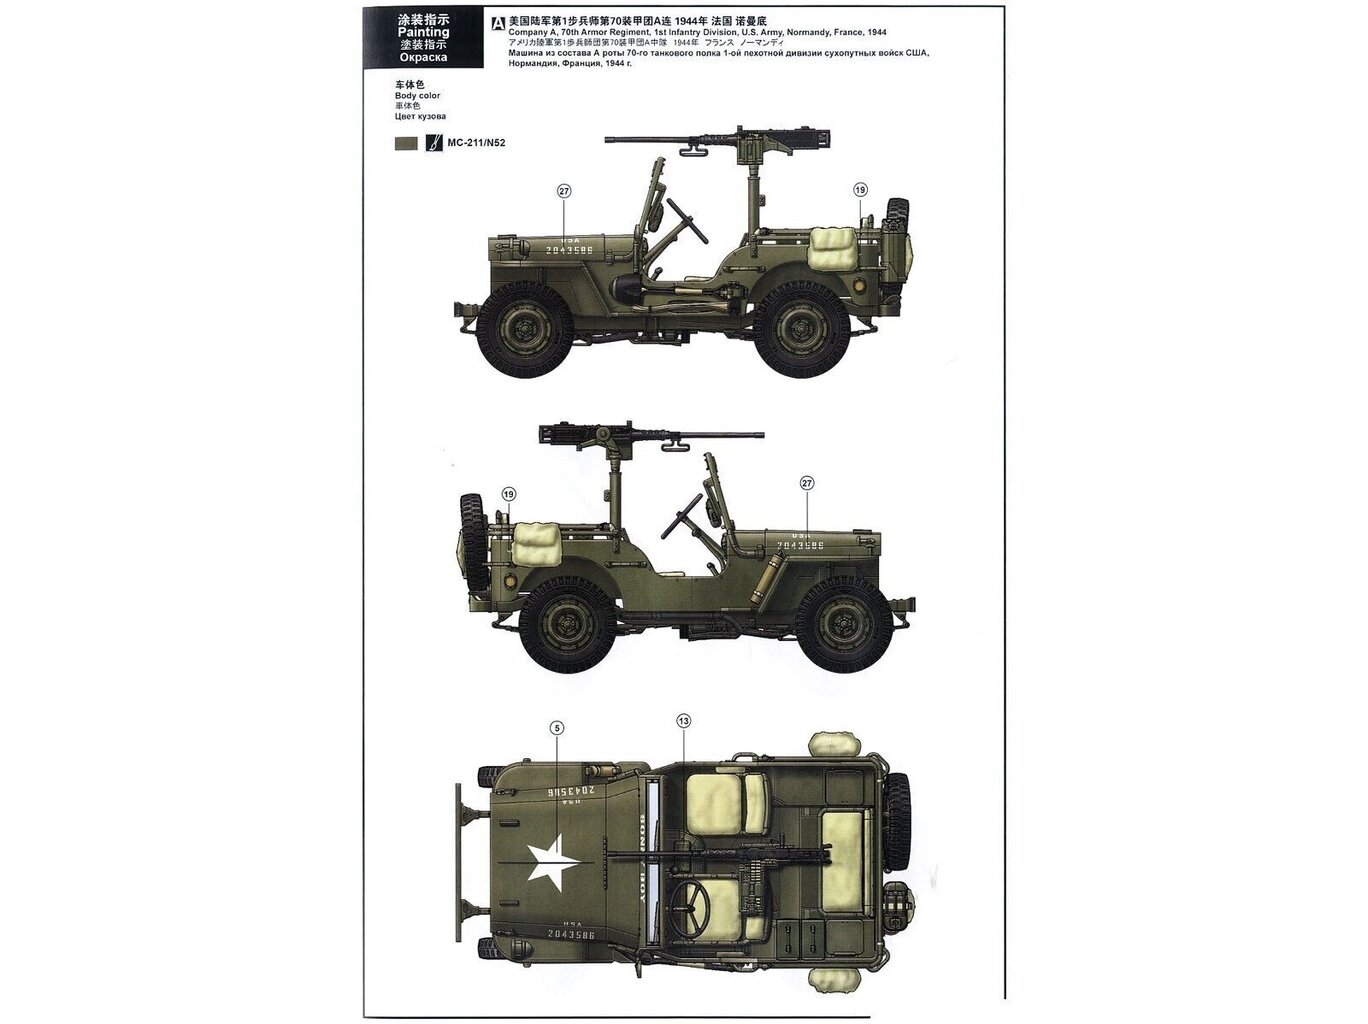 Meng Model - MB Military Vehicle, 1/35, VS-011 цена и информация | Klotsid ja konstruktorid | kaup24.ee